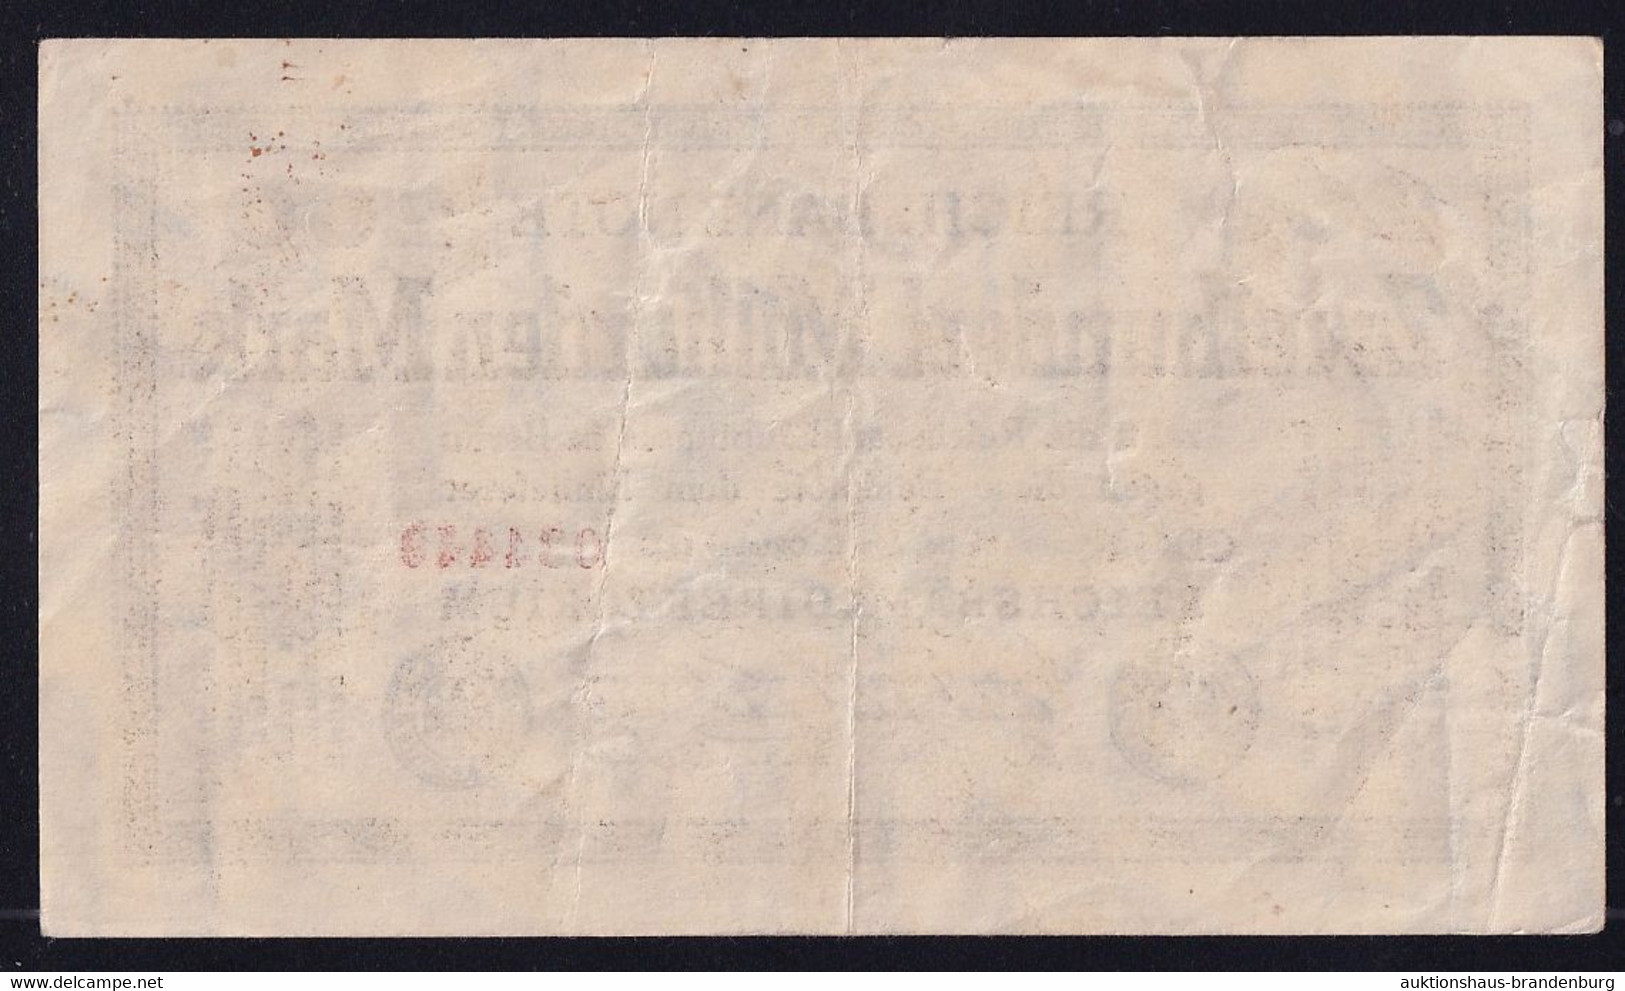 200 Milliarden Mark 15.10.1923 - FZ CD - Wz. Hakensterne - Reichsbank (DEU-143g) - 200 Mrd. Mark